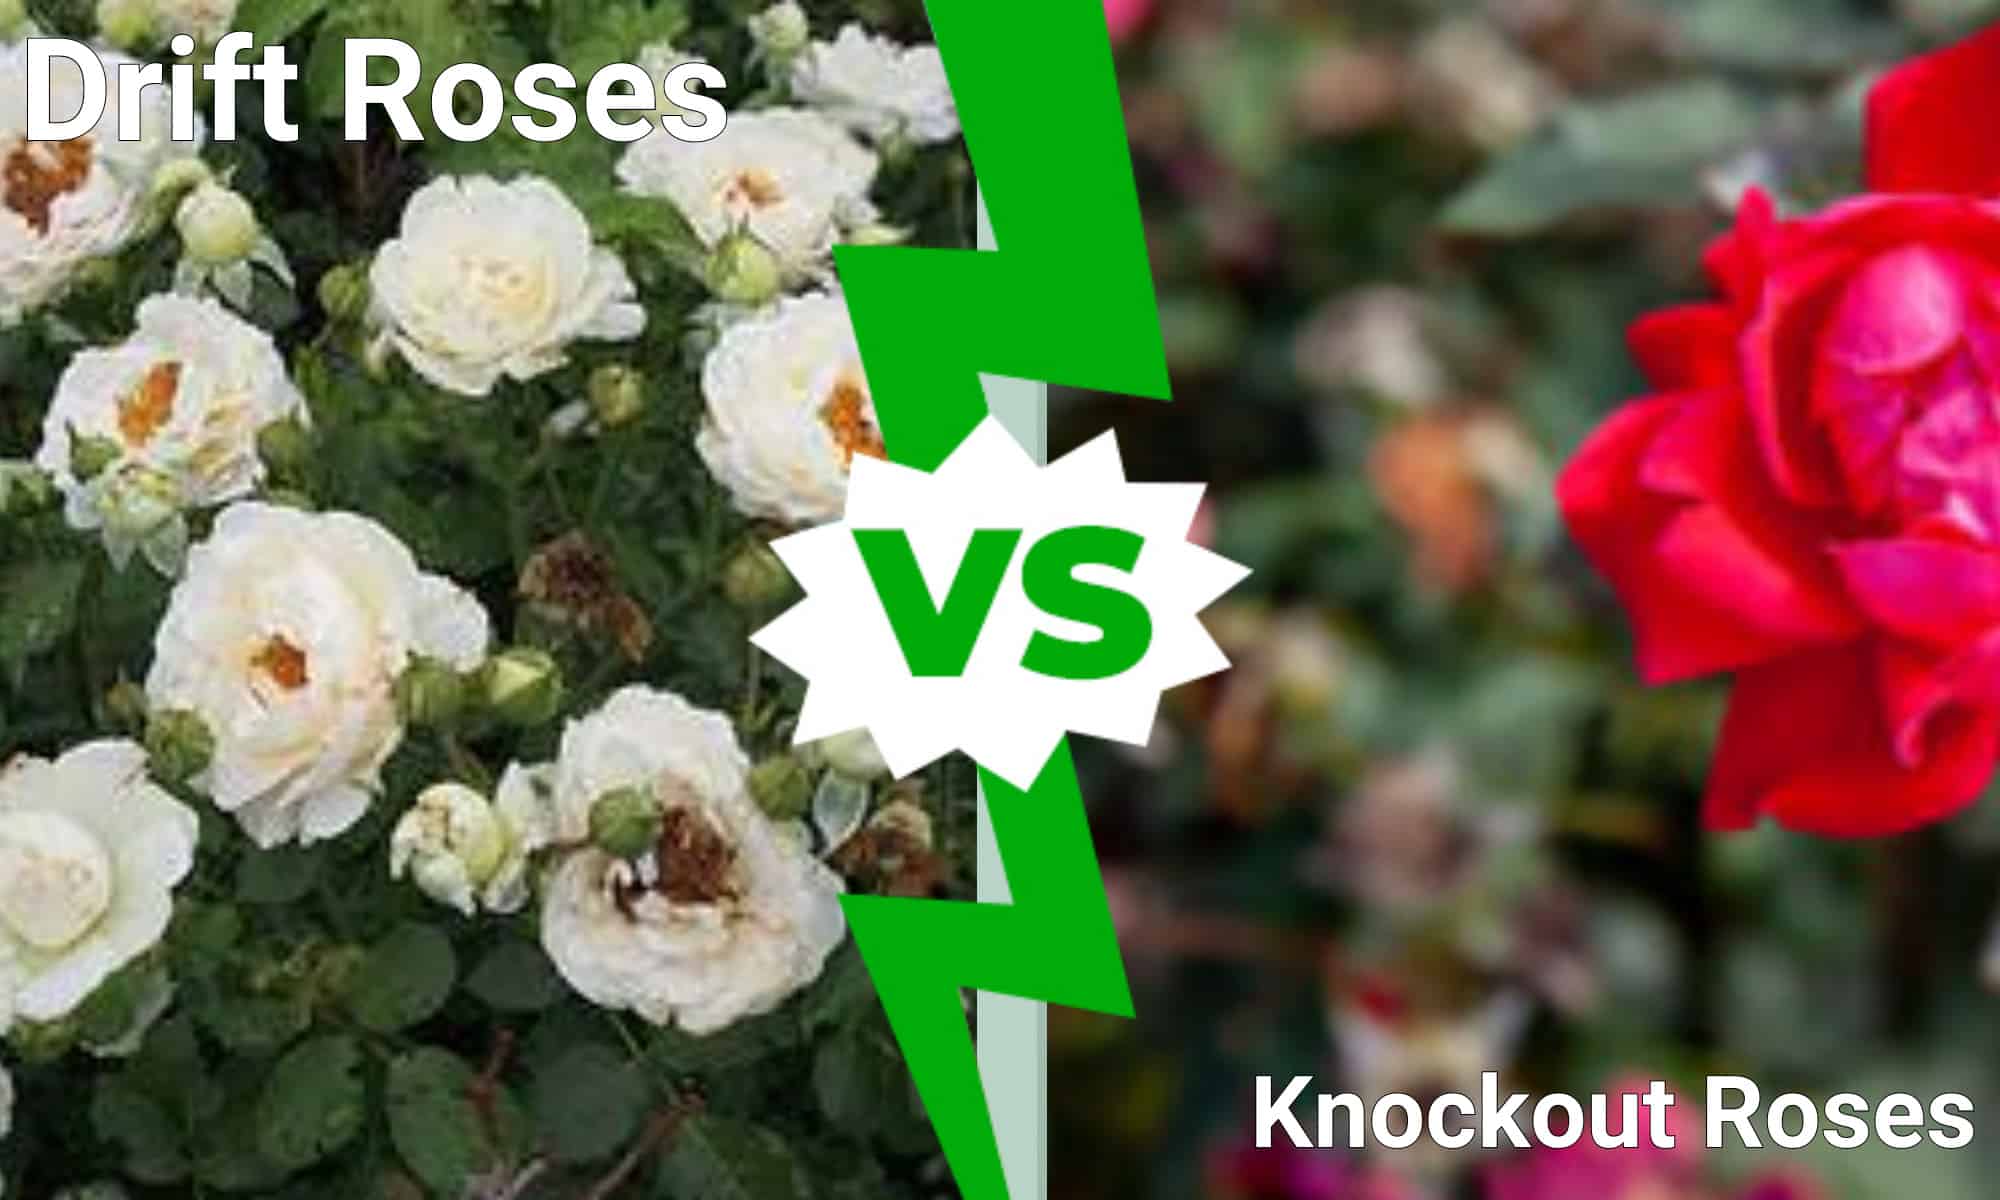 Drift roses vs. knockout roses infographic